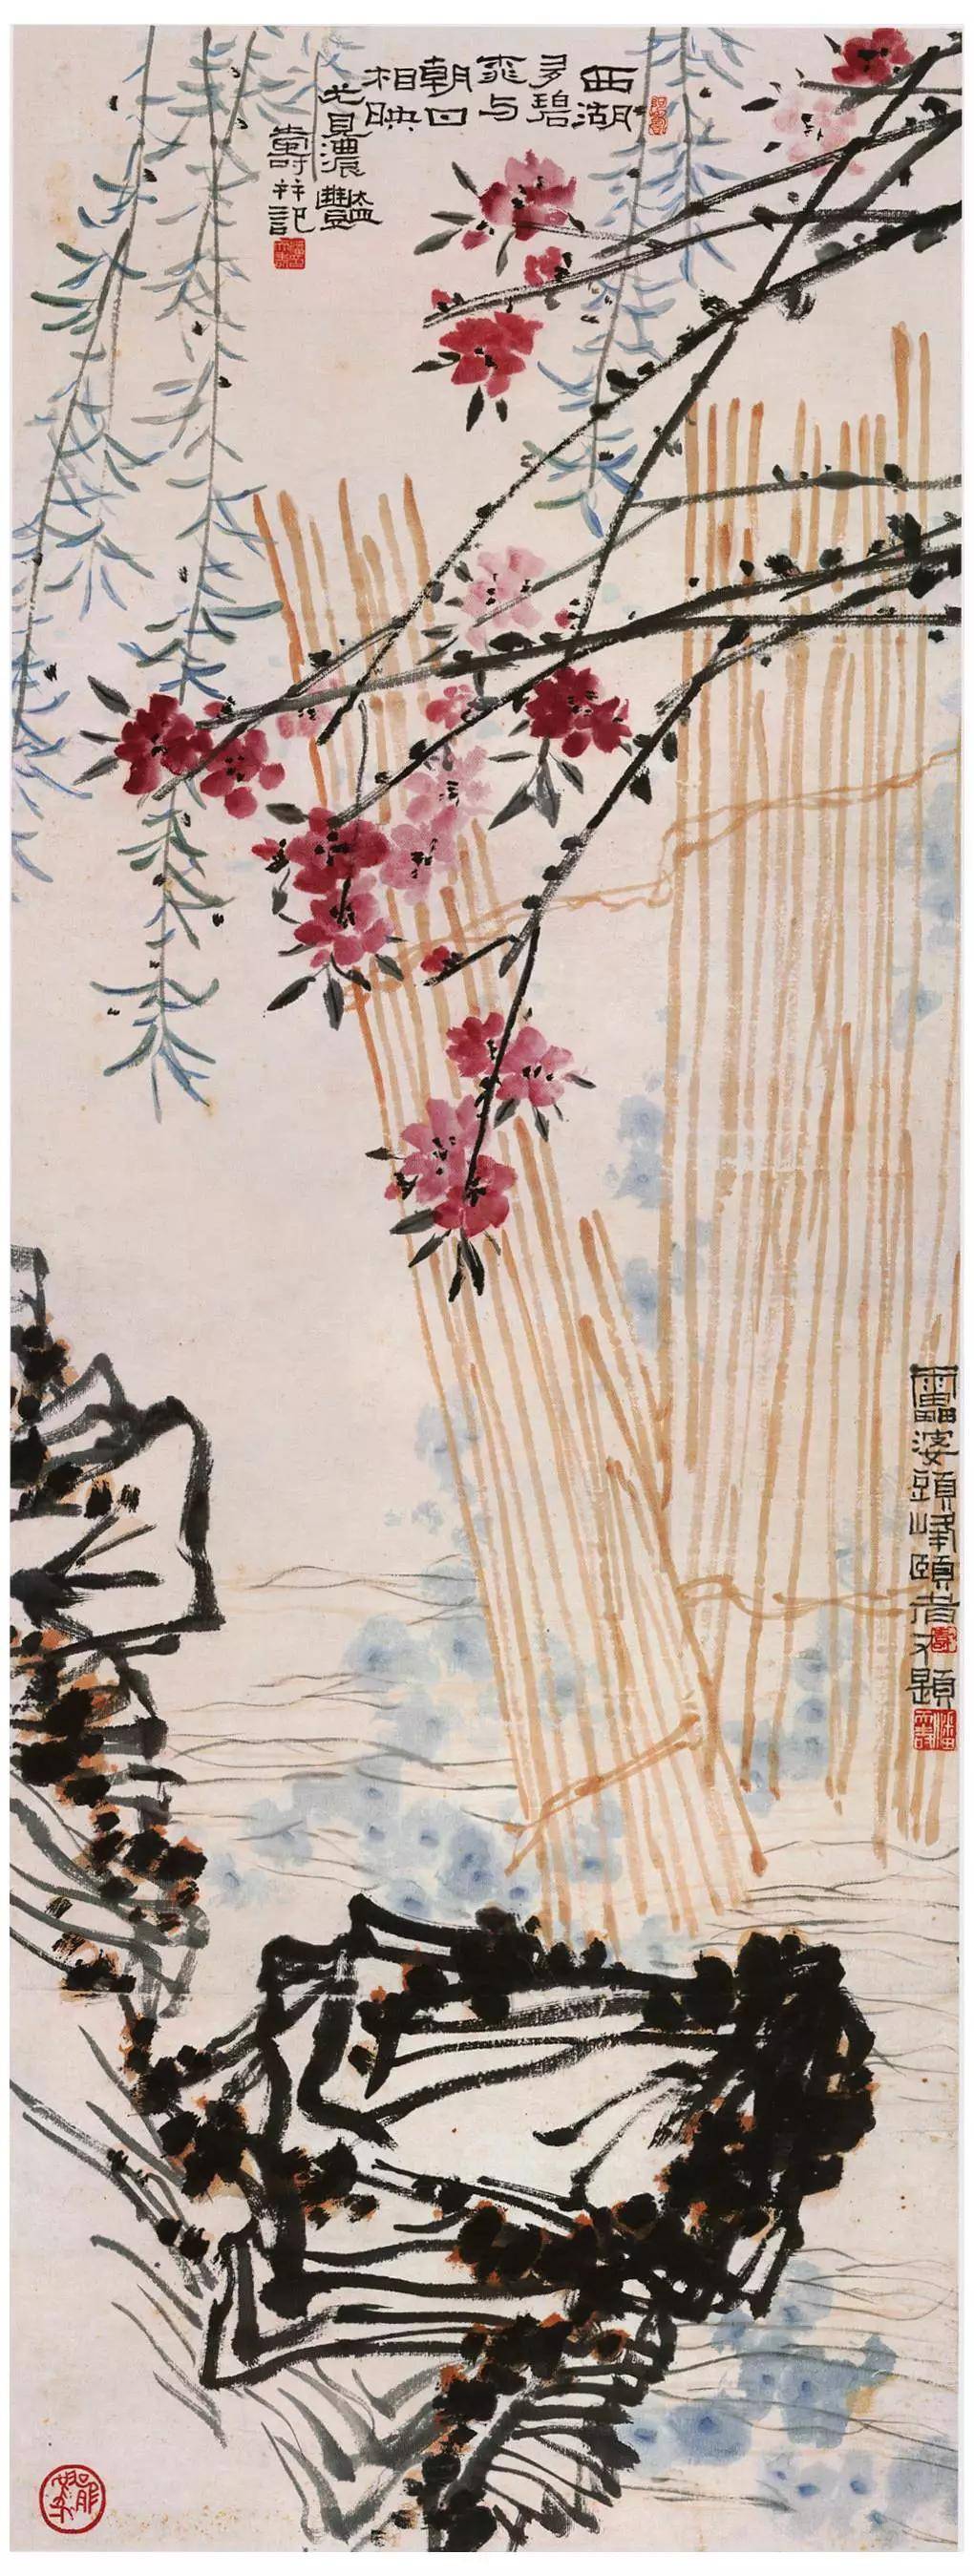 《潘天寿先生课徒稿》:潘天寿的艺术感悟,全蕴藏在这些珍贵的课徒稿